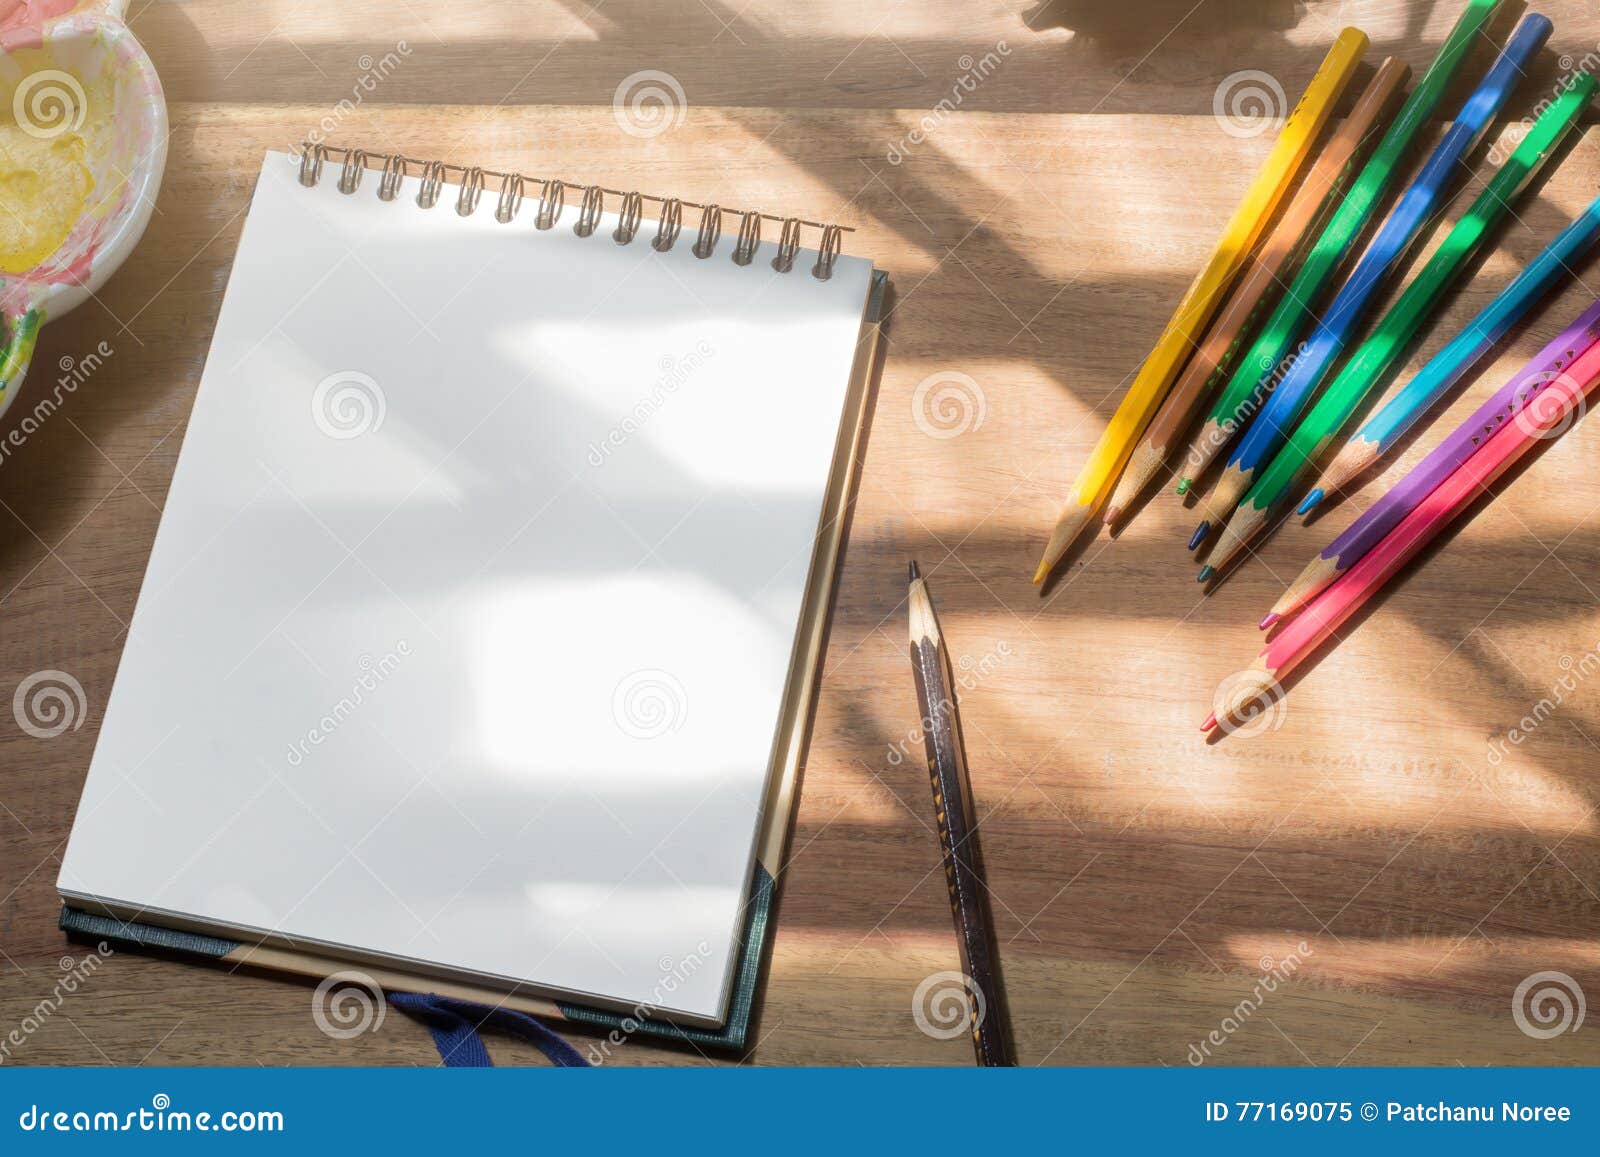 https://thumbs.dreamstime.com/z/sketch-book-color-pencils-wooden-work-desk-background-77169075.jpg